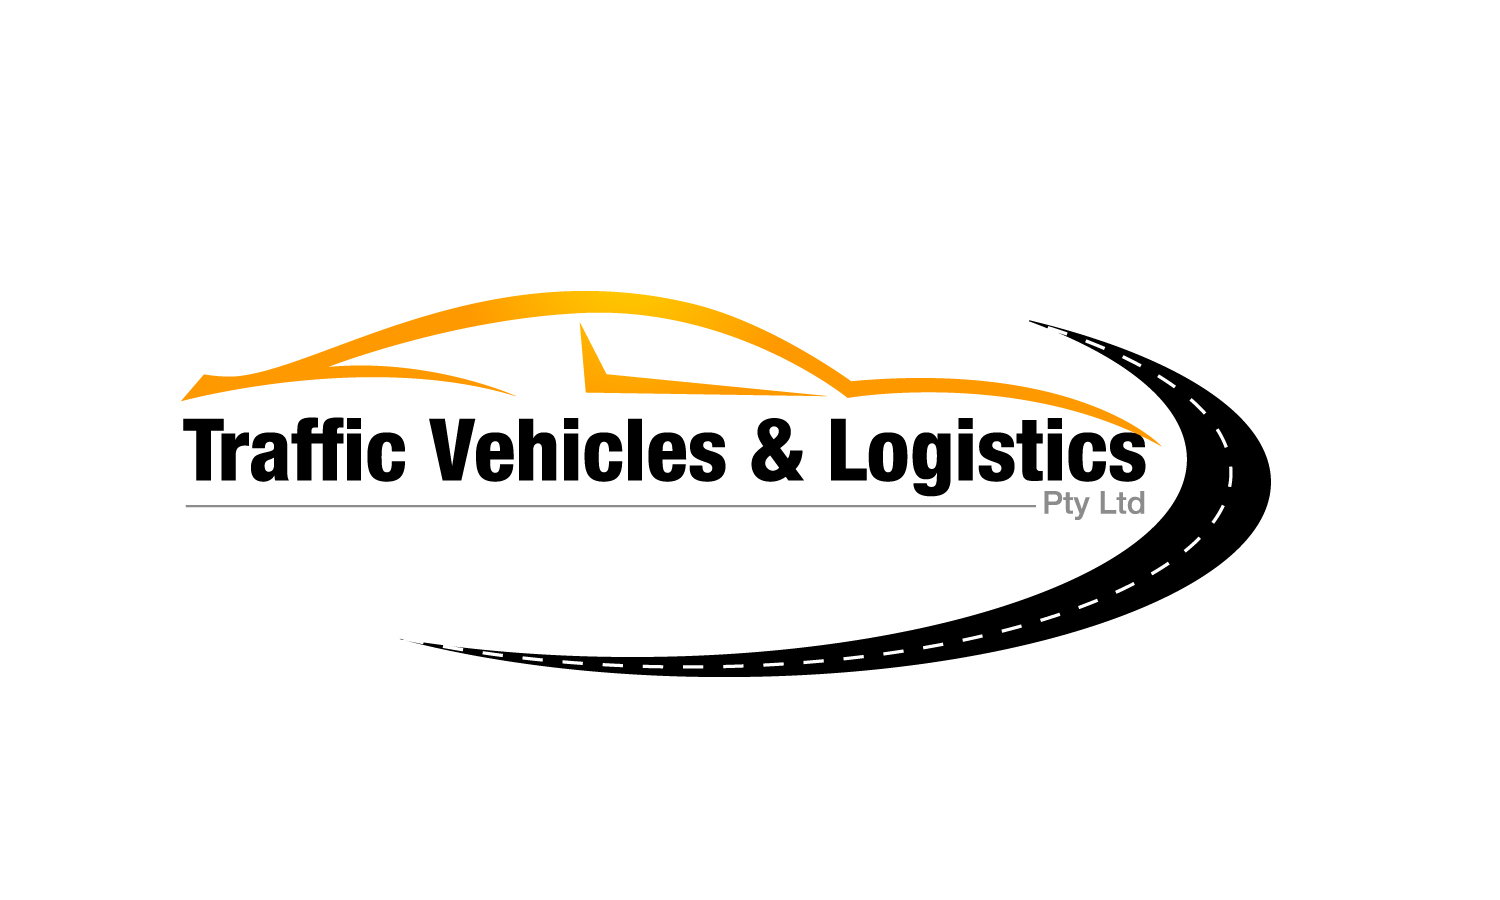 Traffic Vehicles & Logistics